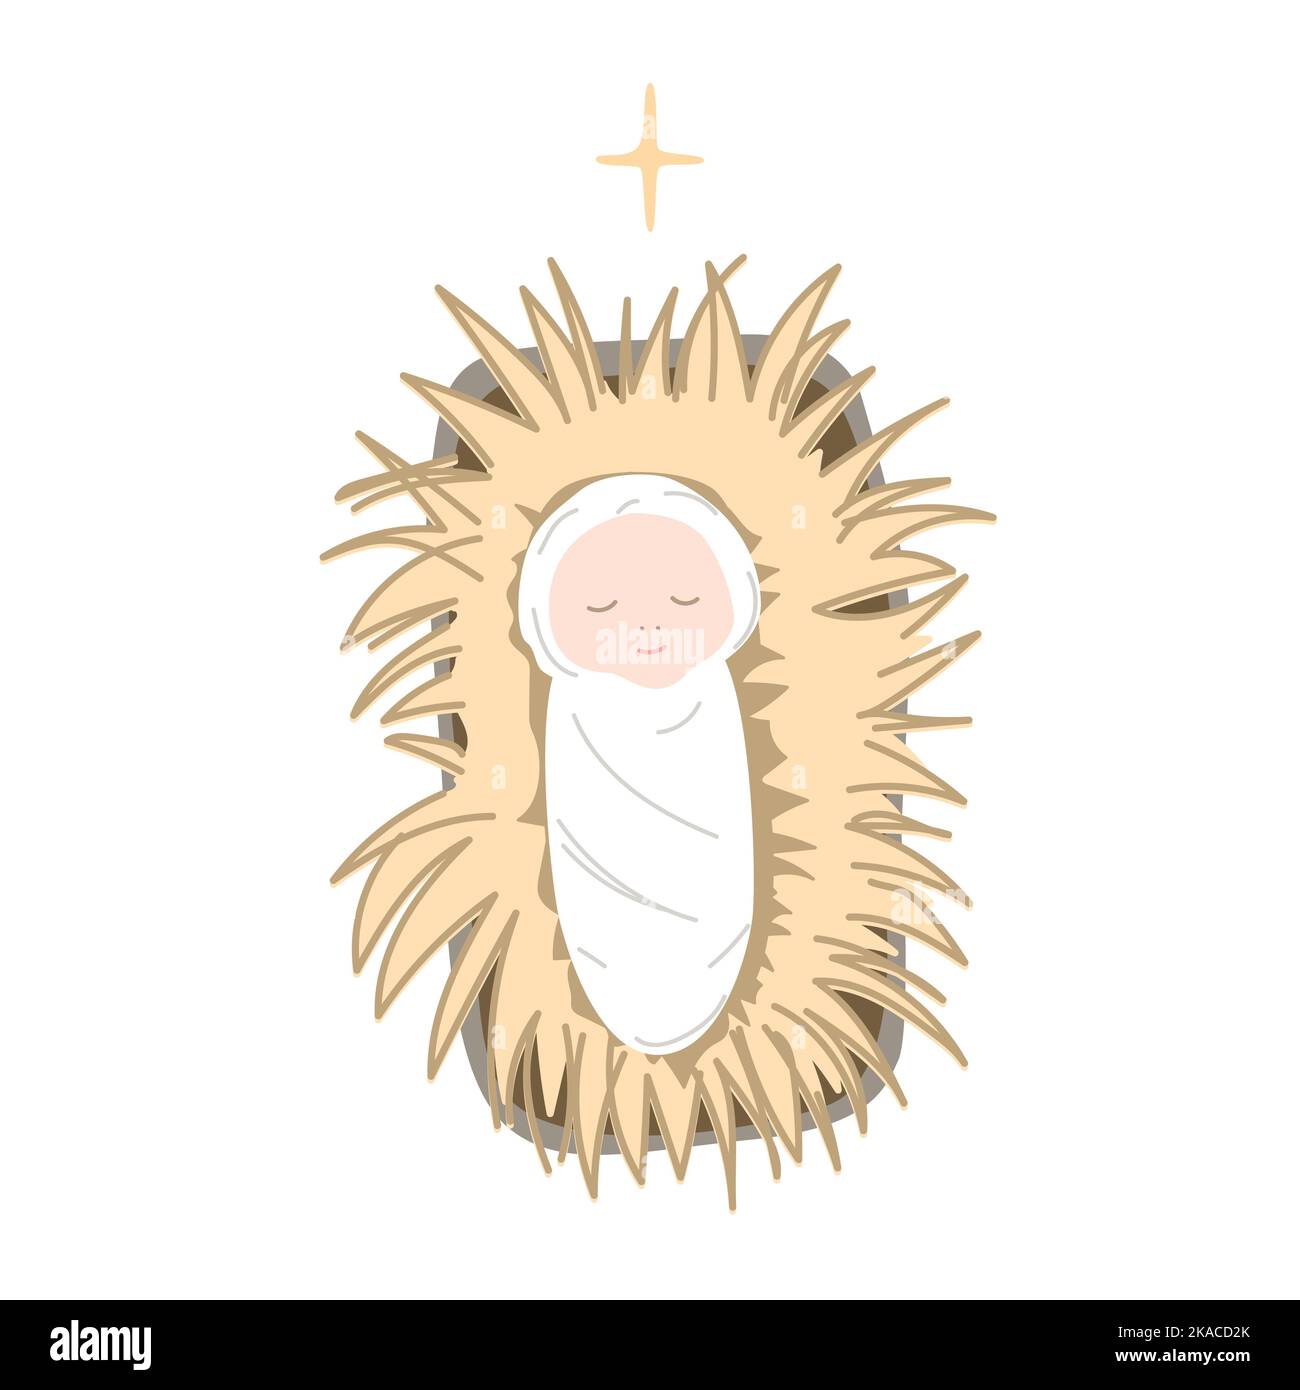 Bébé Jésus allongé sur le foin dans une mangeoire. Une icône de Noël en forme de joyeux Noël pour la Sainte famille. Illustration vectorielle isolée de dessin animé Illustration de Vecteur